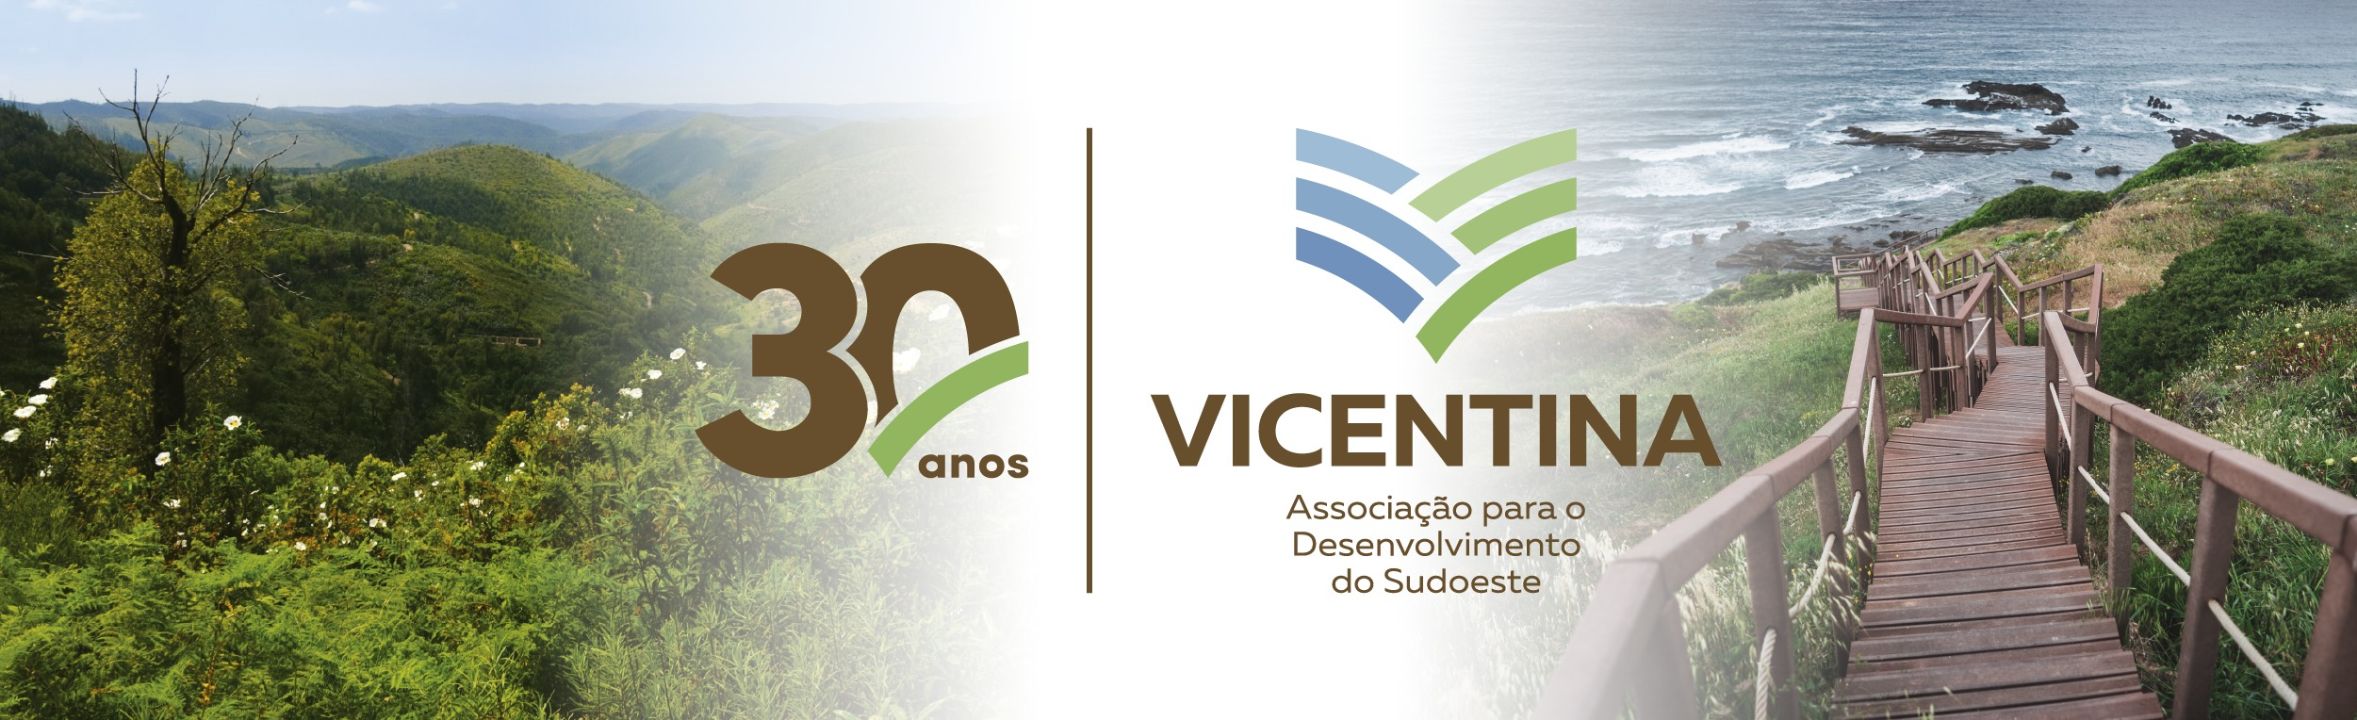 No passado dia 27 de Junho a Vicentina – Associação para o Desenvolvimento do Sudoeste celebrou os 30 anos